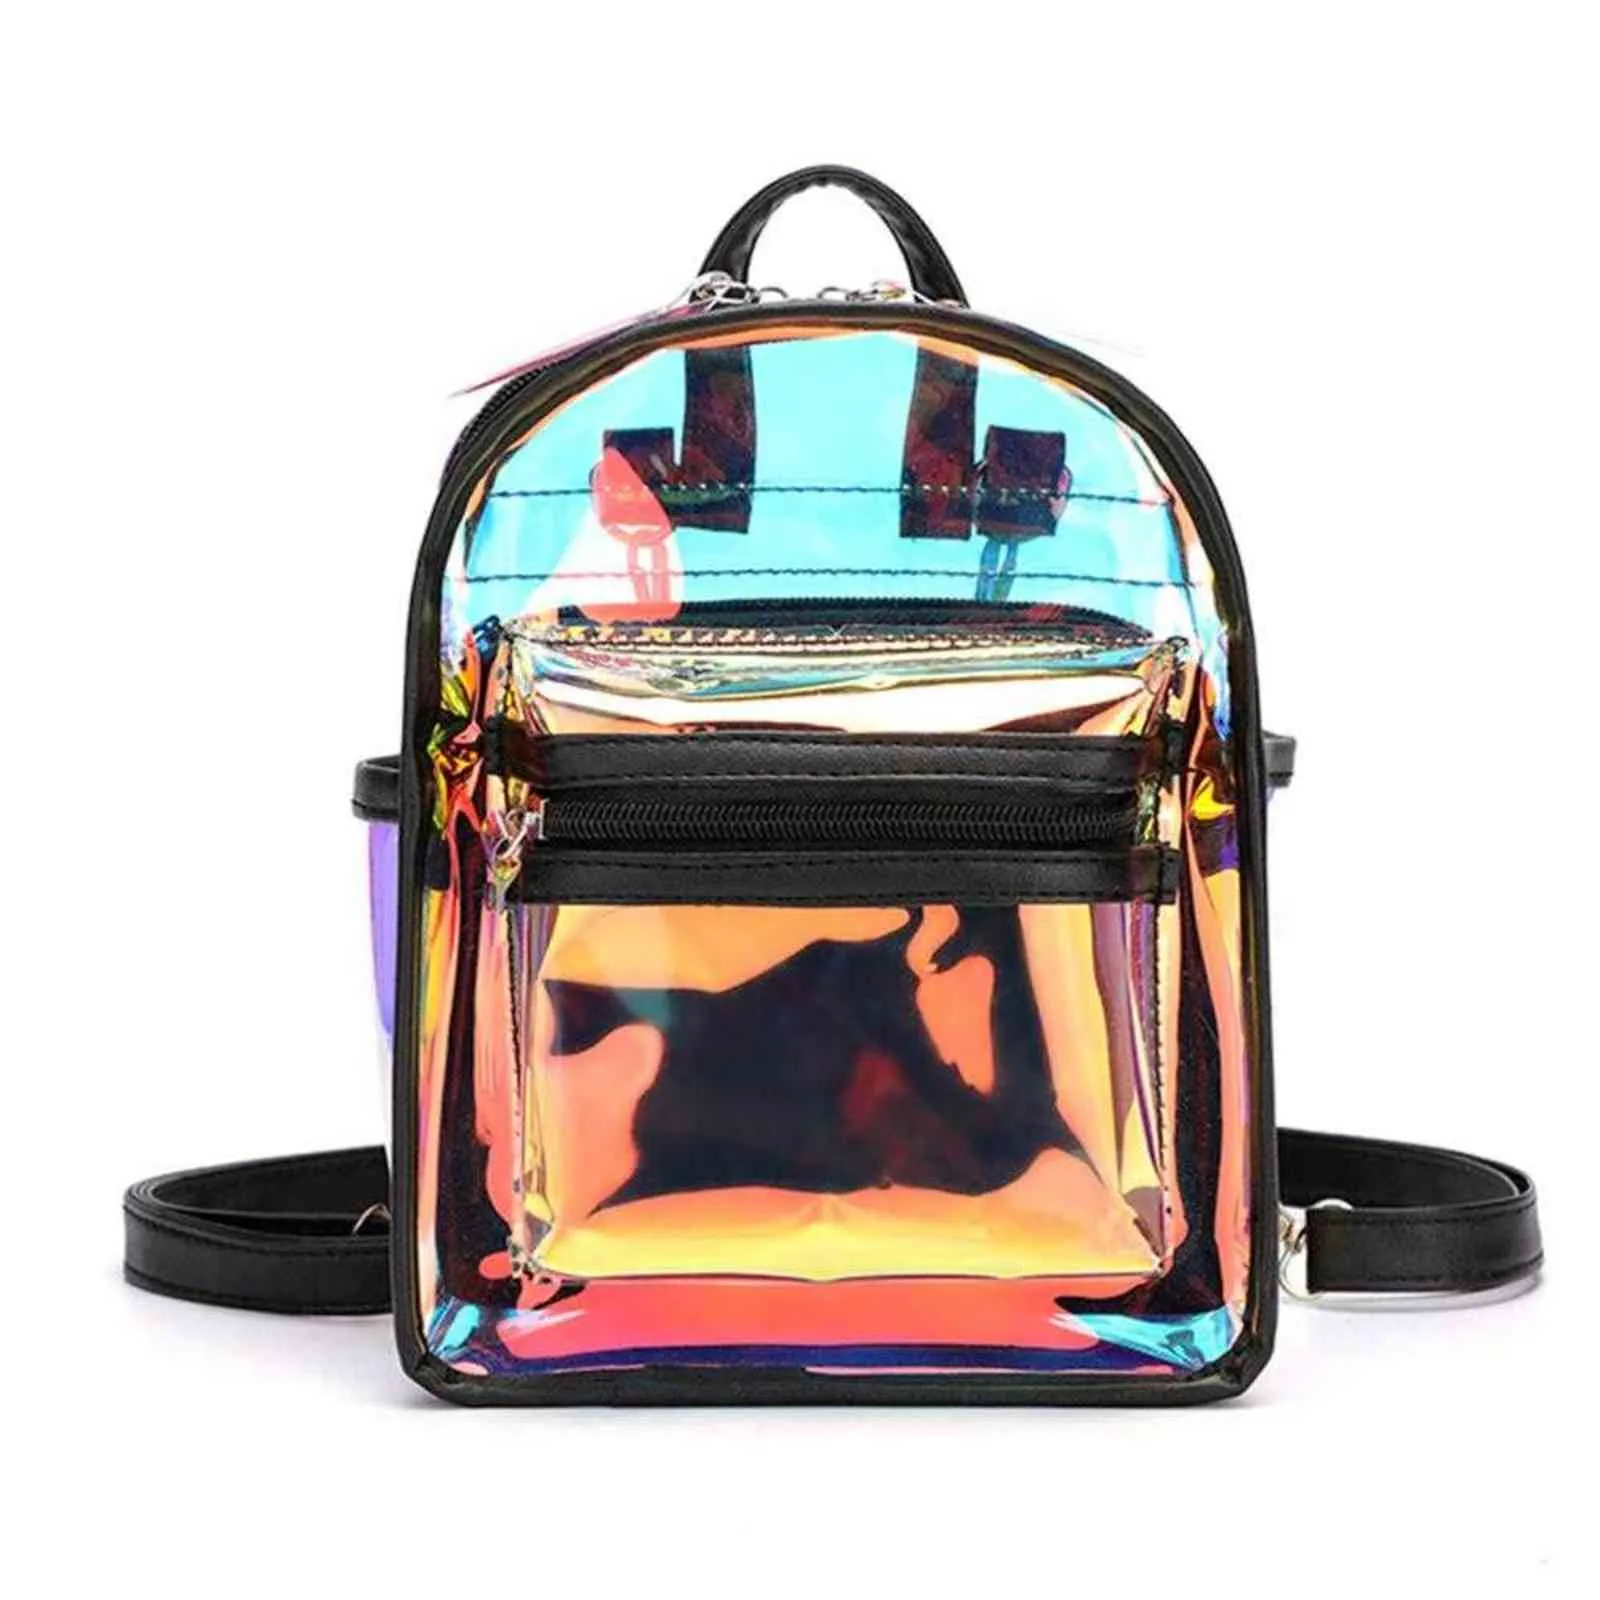 Holographic przezroczysty plecak kobiety pcv hologram mini jasny plecak torba na ramię codzienny plecak y1105